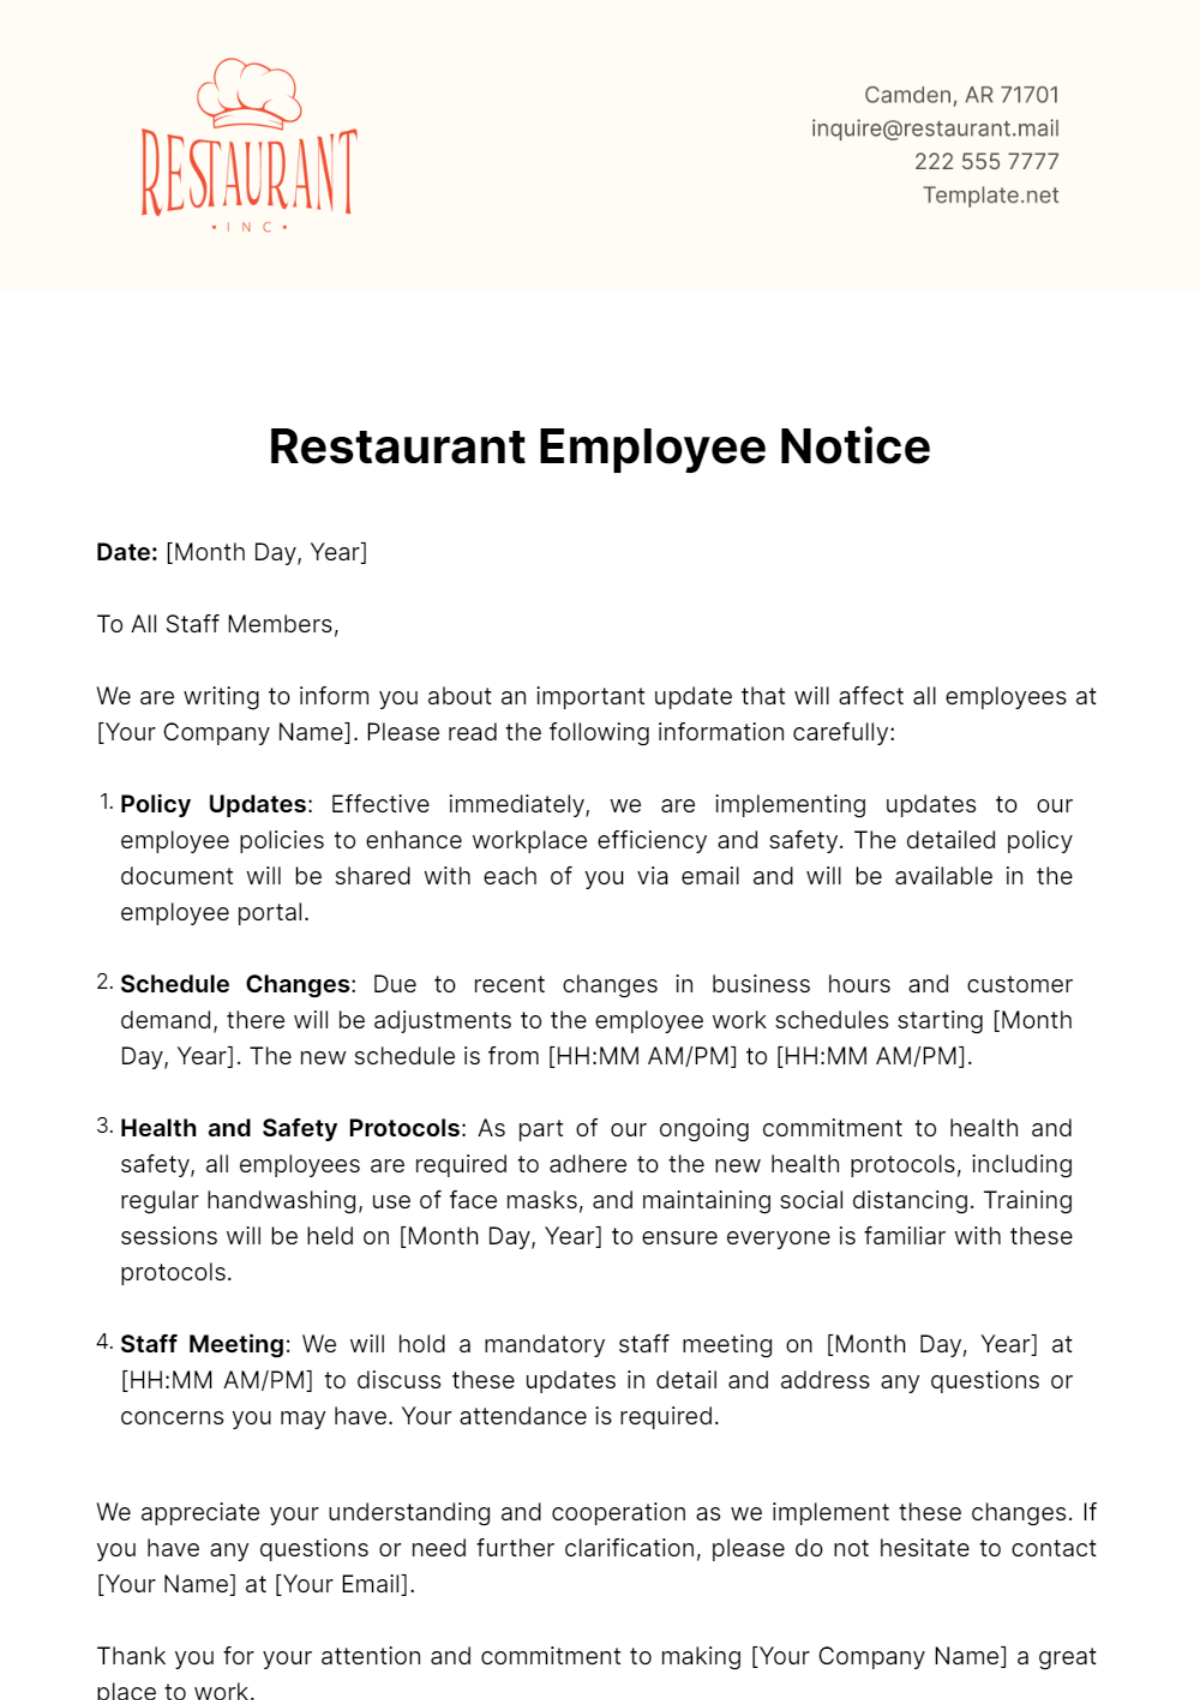 Restaurant Employee Notice Template